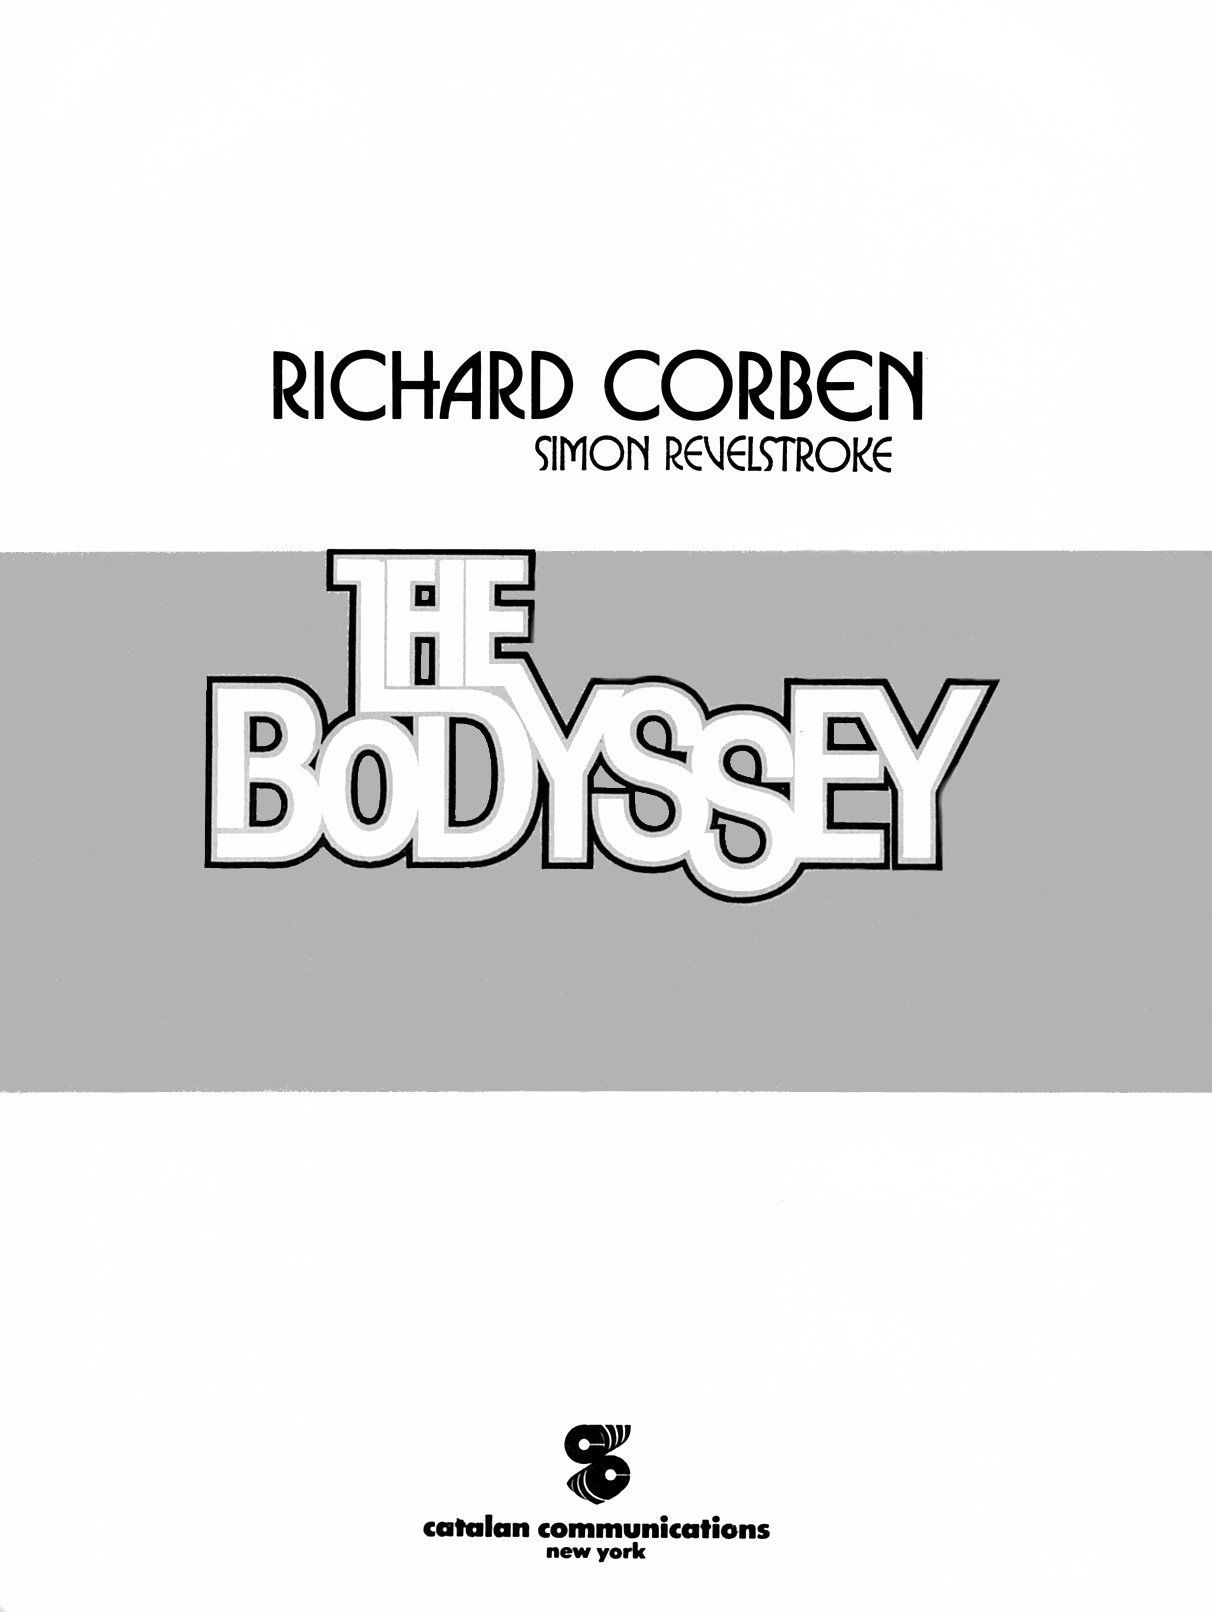 ริชาร์ด corben คน bodyssey